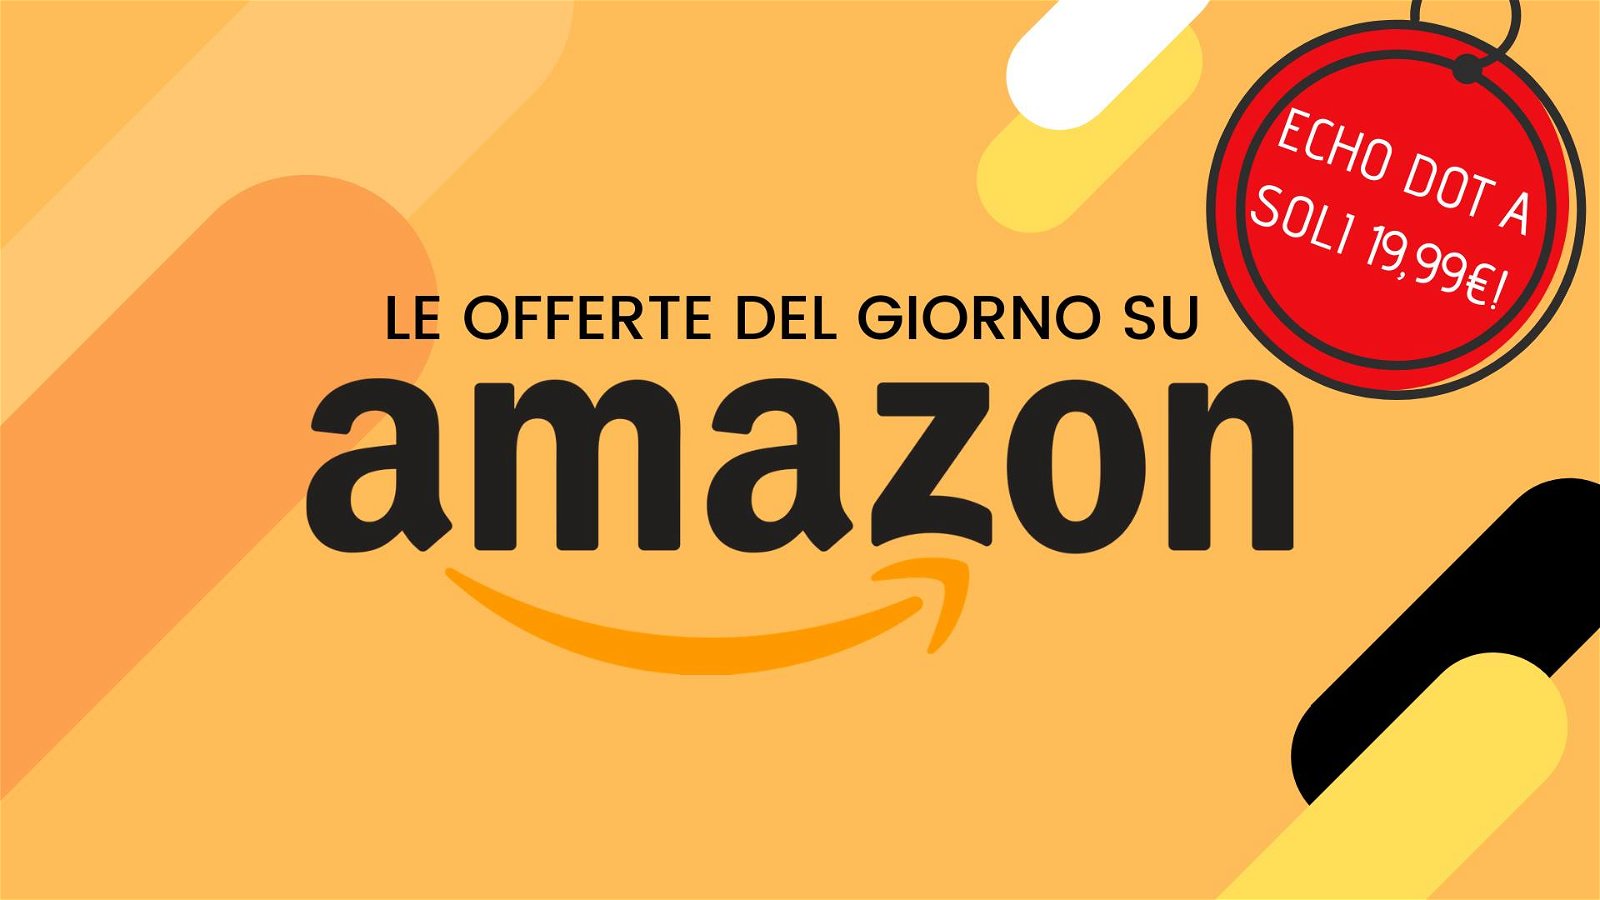 Immagine di Offerte del giorno Amazon: Echo Dot a 19,99€!